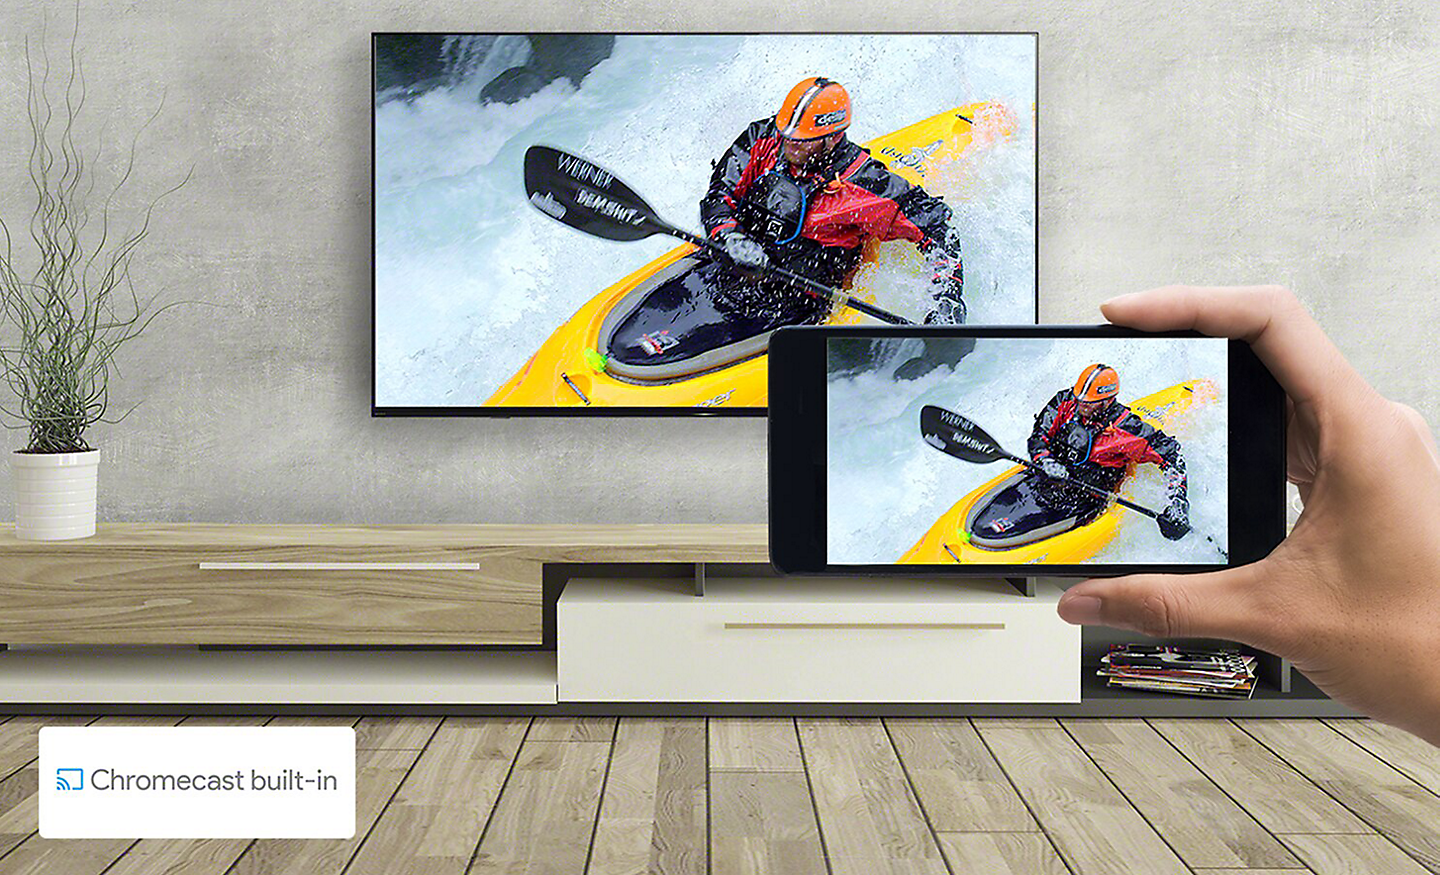 Dnevna soba s prikazom televizorja, na katerem roka drži pametni telefon, oba zaslona prikazujeta isto sliko kajaka, spodaj desno pa je logotip »Chromecast built-in«